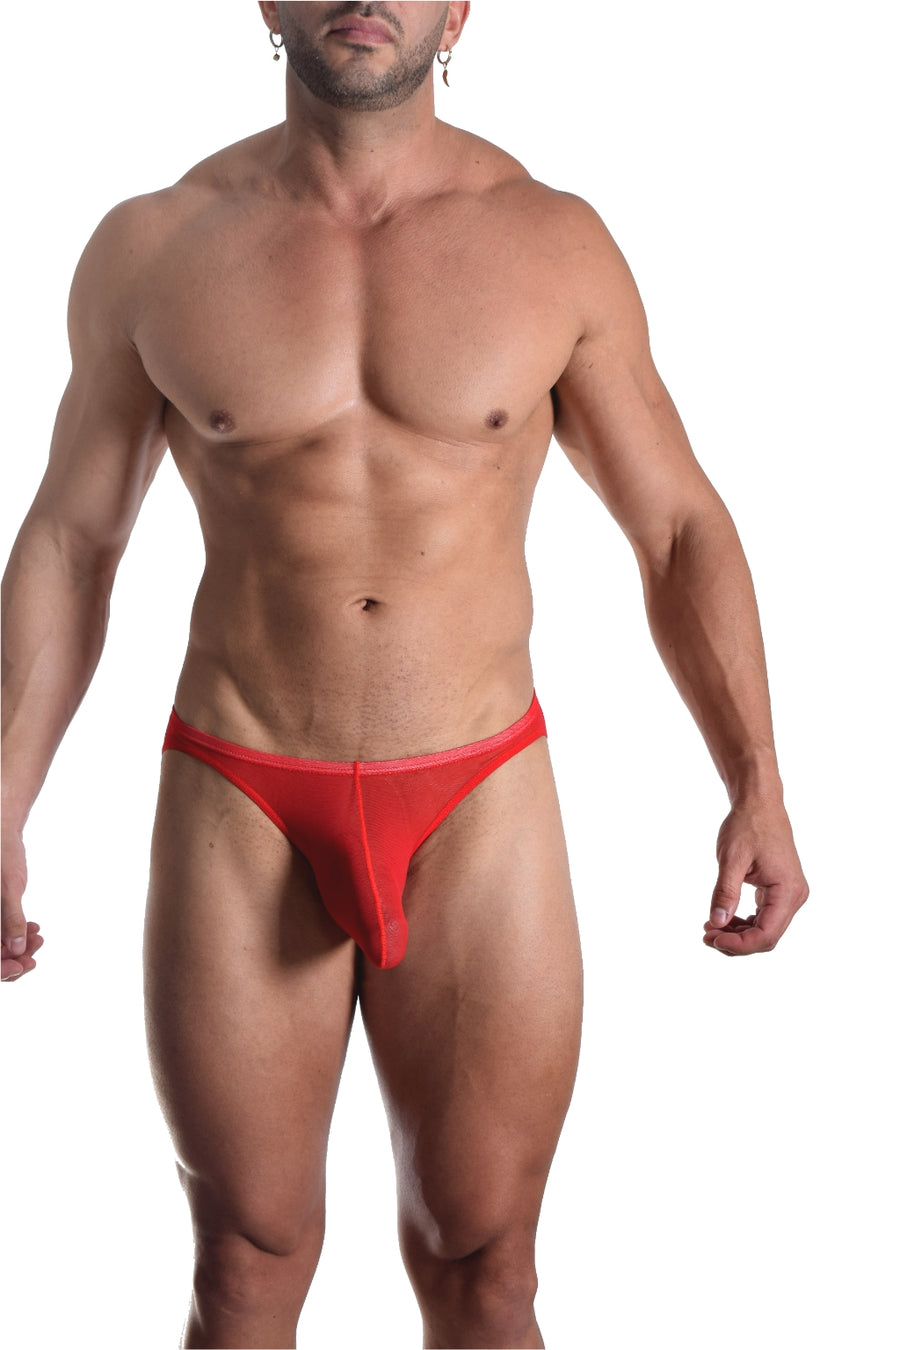 BfM Mens Sheer Net Bikini Pouch Underwear – Bodywear for Men